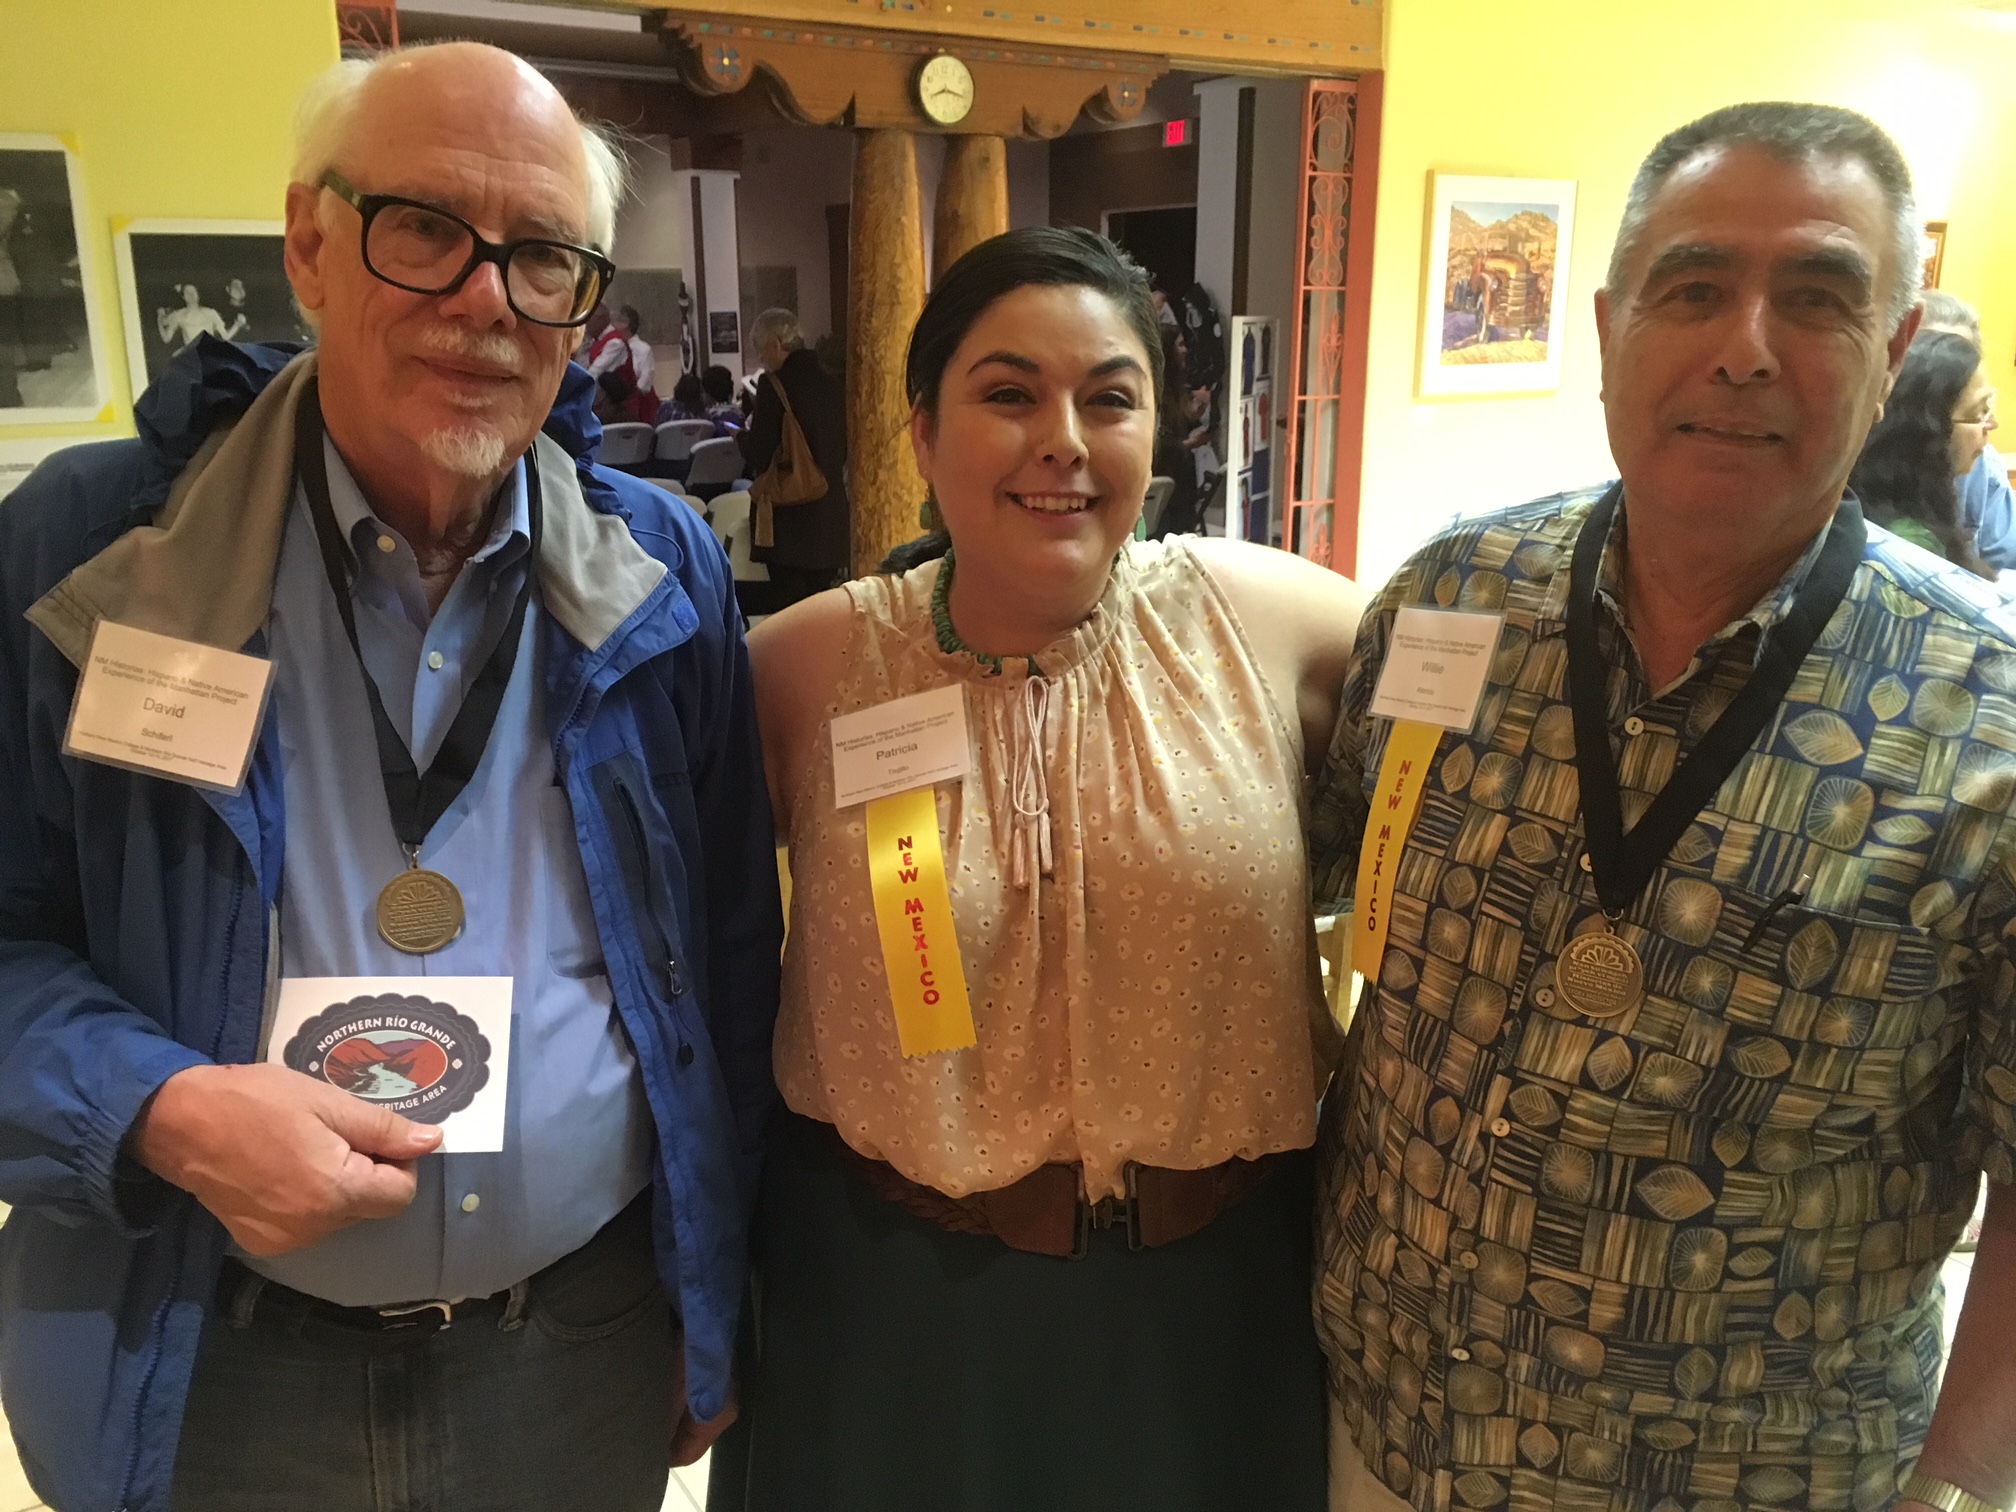 Left to right: David Schiferl, Dr. Patricia Trujillo, and Willie Atencio.